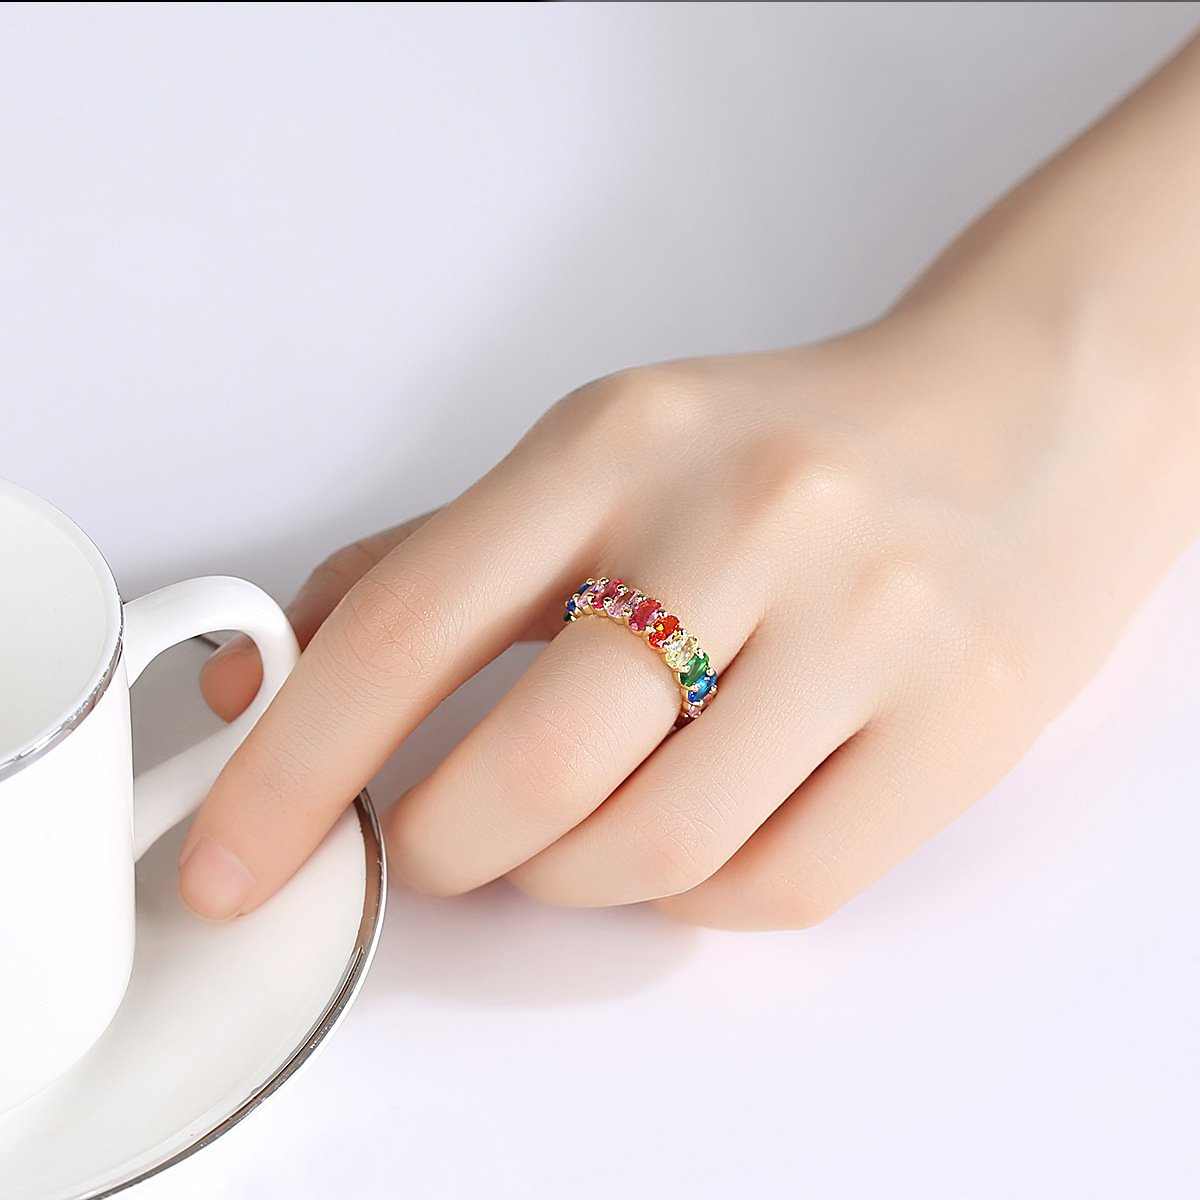 Multi Colored Gemstone Rings - HERS